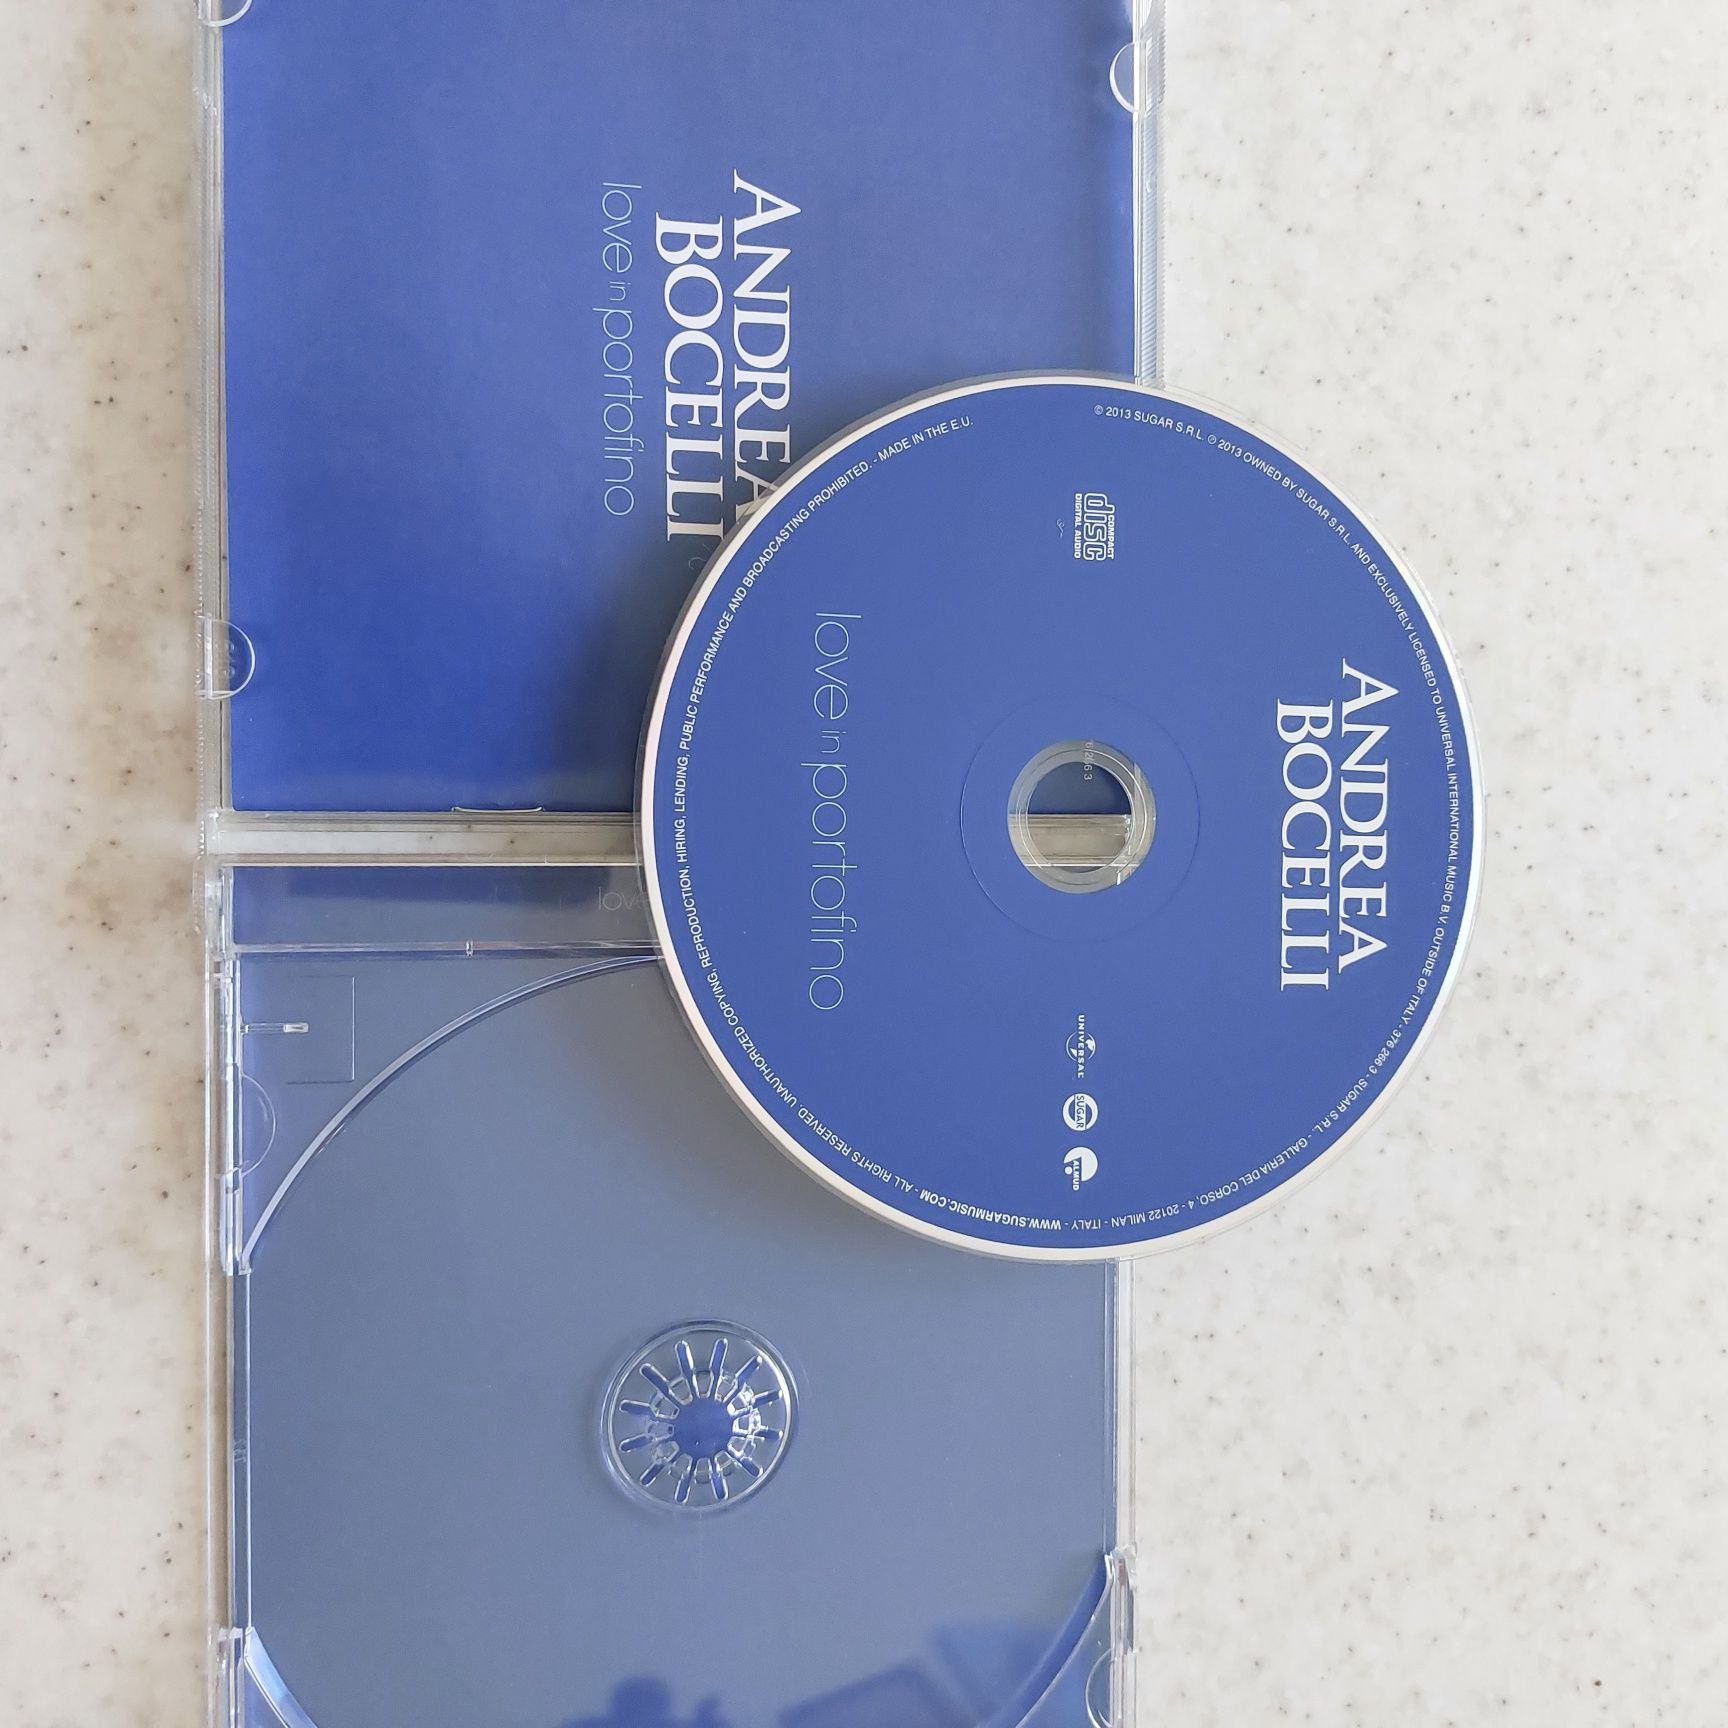 Andrea Bocielli "Love in Portofino" cd